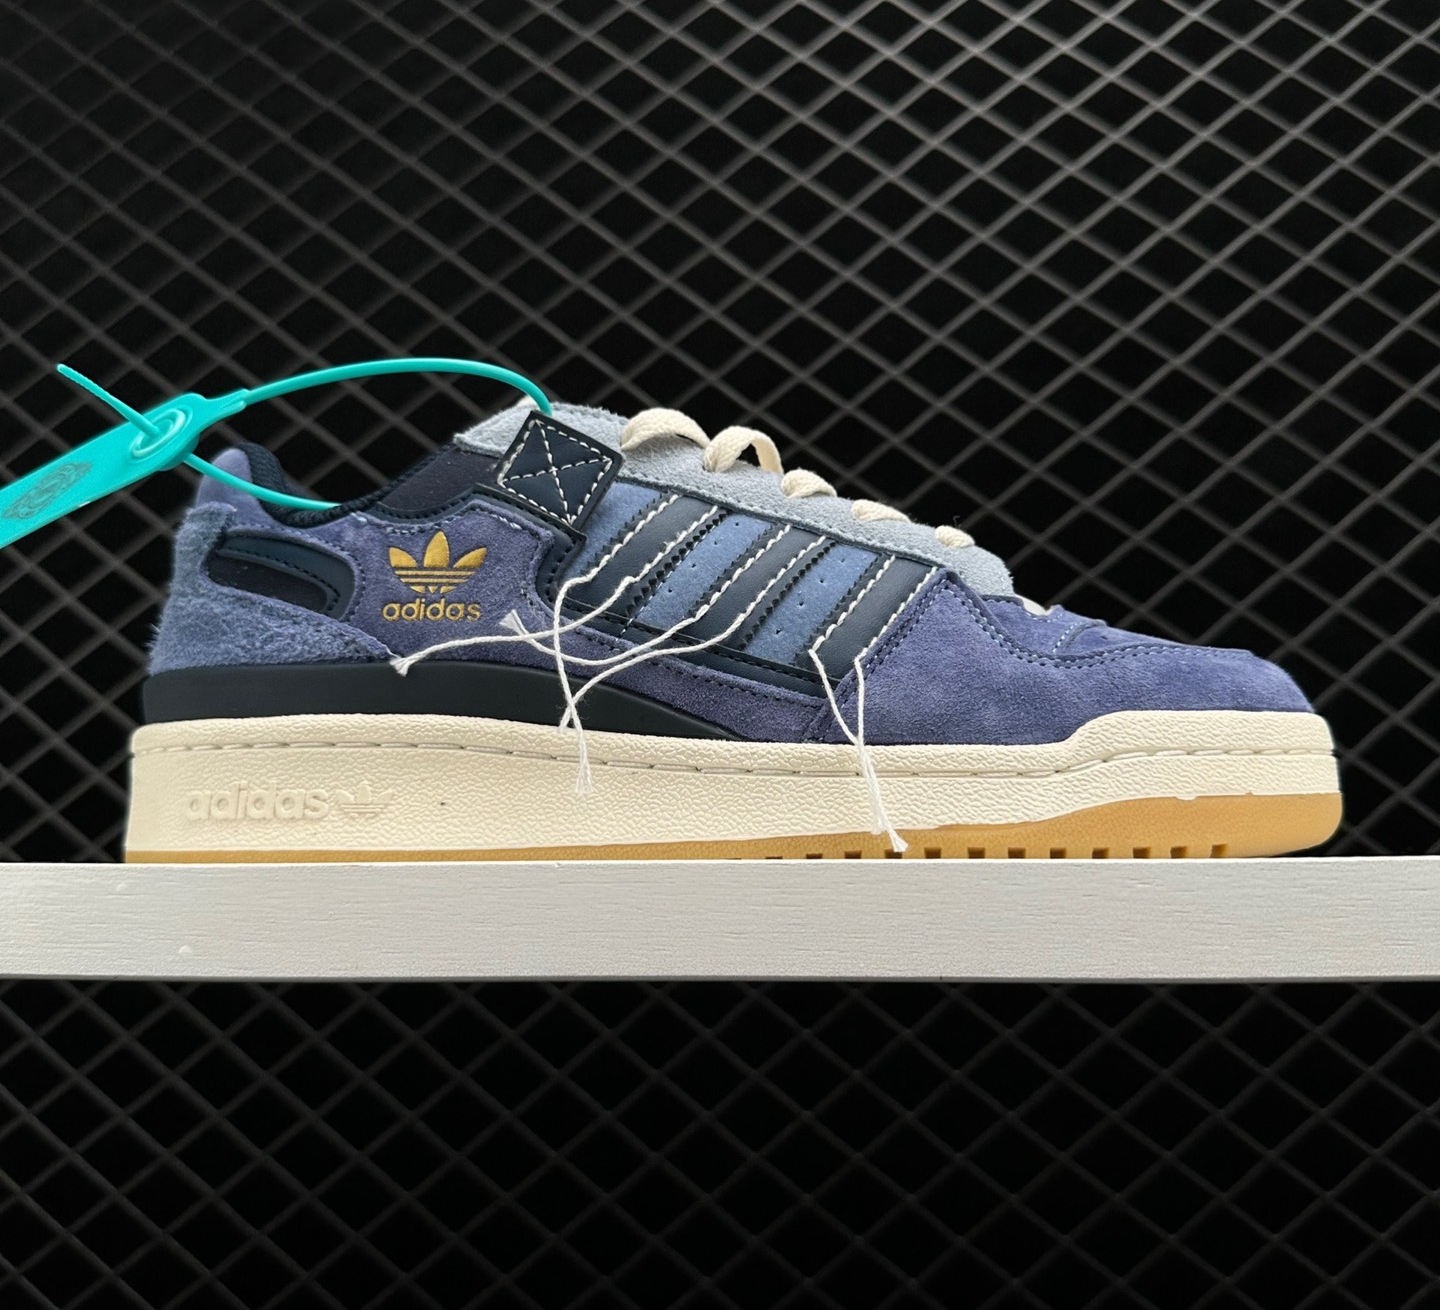 Adidas Originals Forum 84 Low Blue GW0298: Premium Sneakers for Style